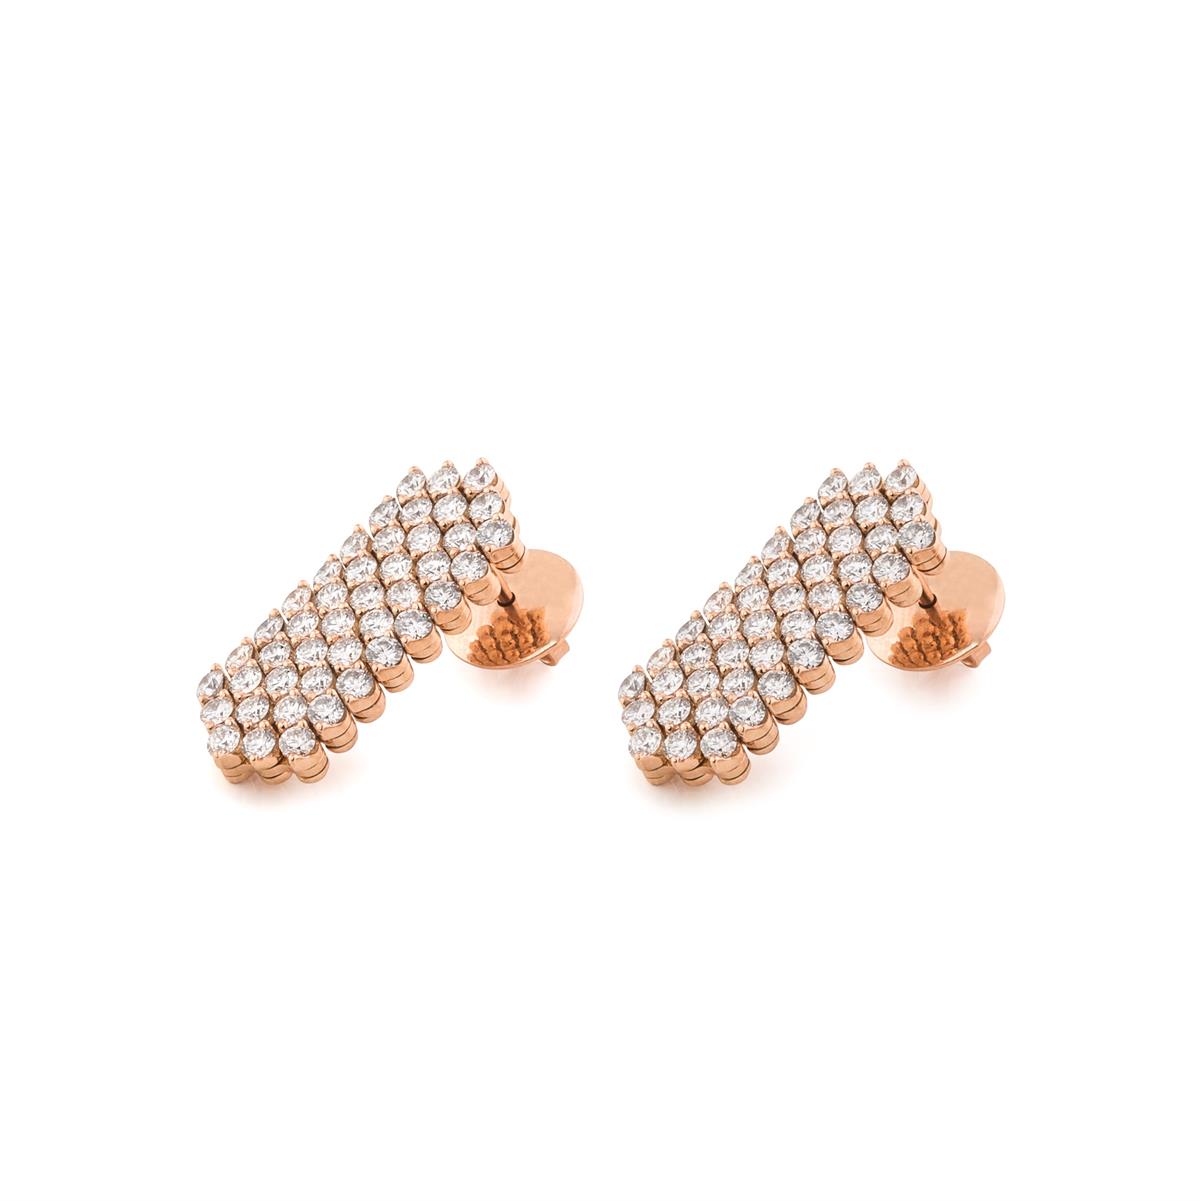 Juwelier Kruzik - Michael Kruzik Luxury Concept - Serafino Consoli_multisize_earrings_2